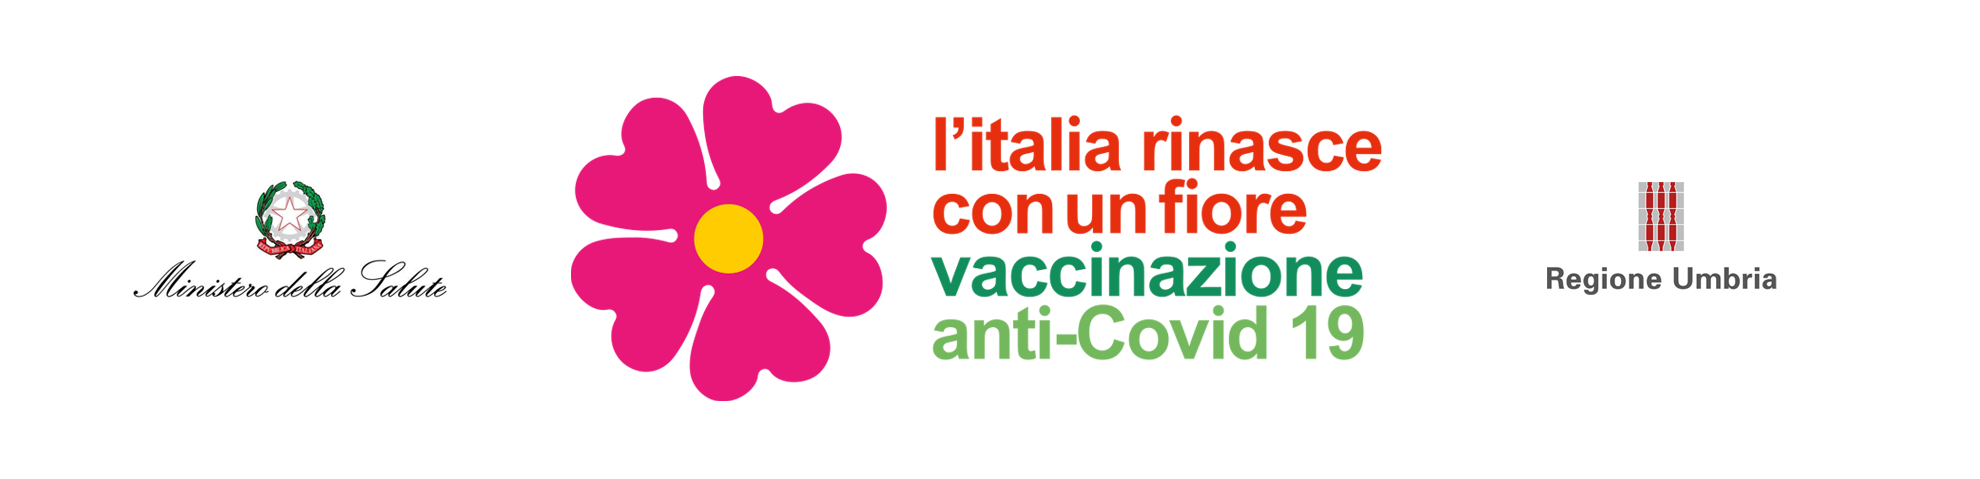 Tutte le informazioni per la Vaccinazione Covid 19 in Umbria